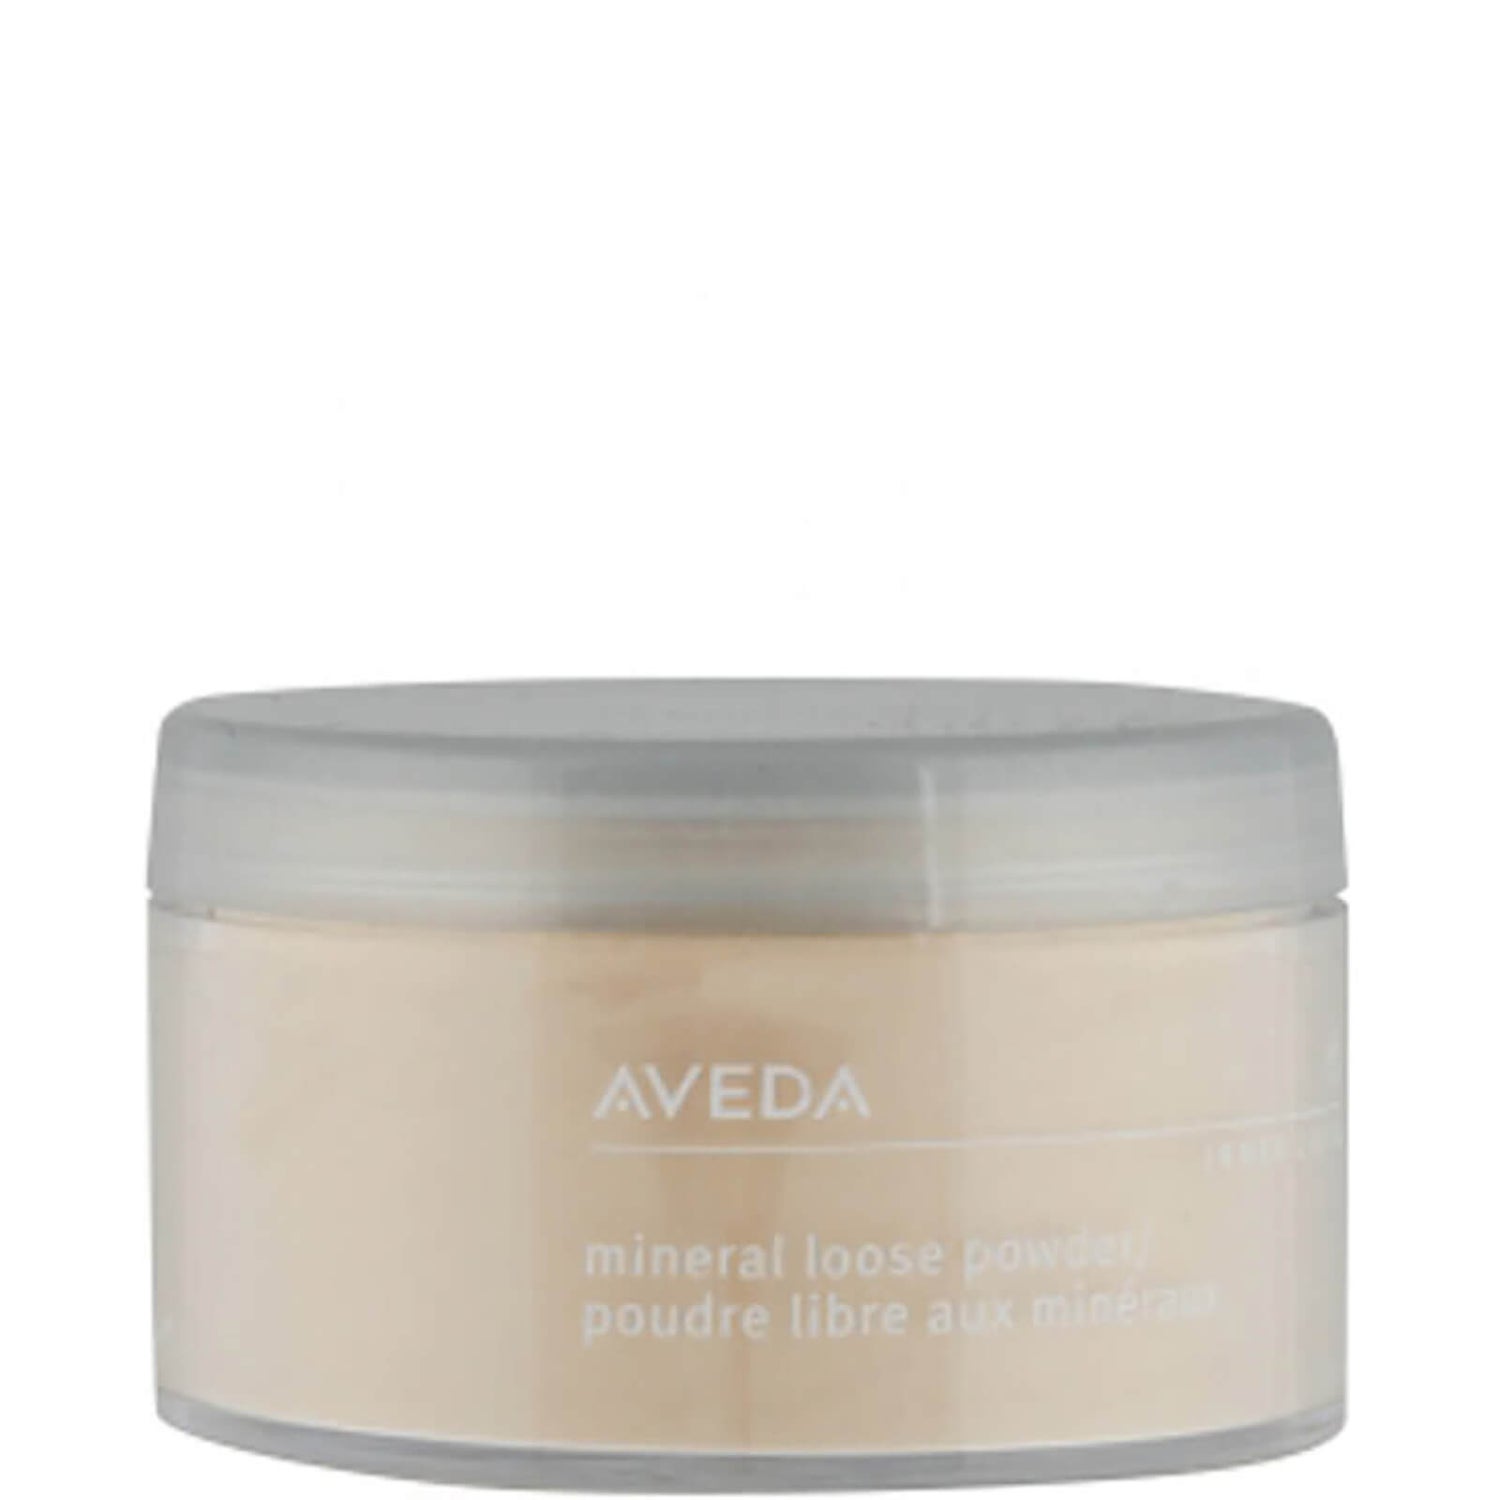 Aveda Inner Light Loose Powder – 01 Translucent